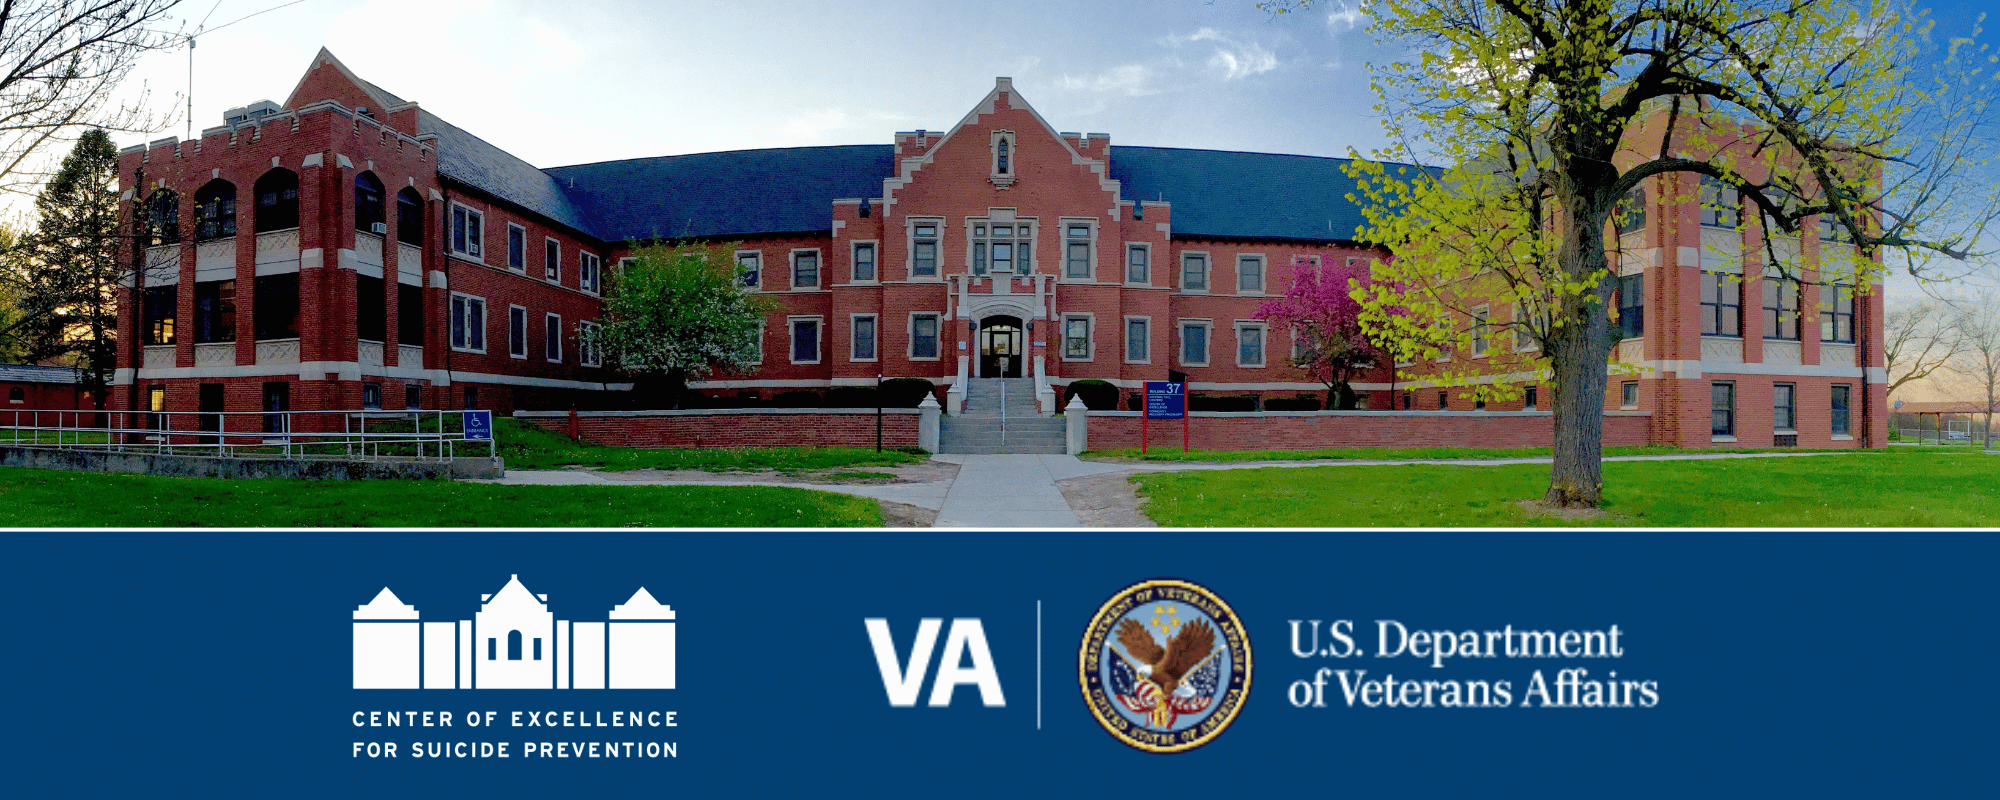 US Veterans affairs building